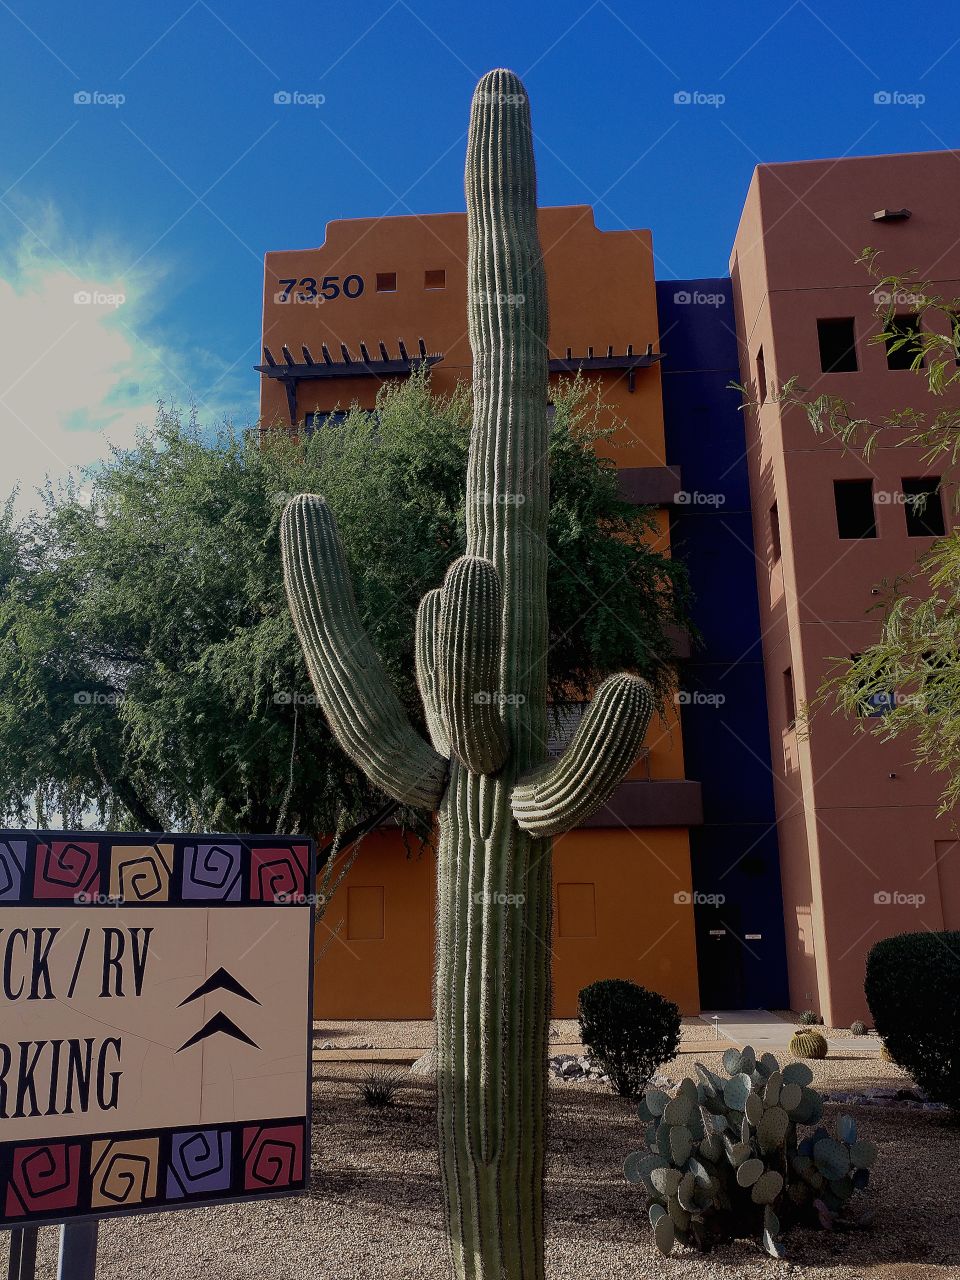 cactus in Arizona